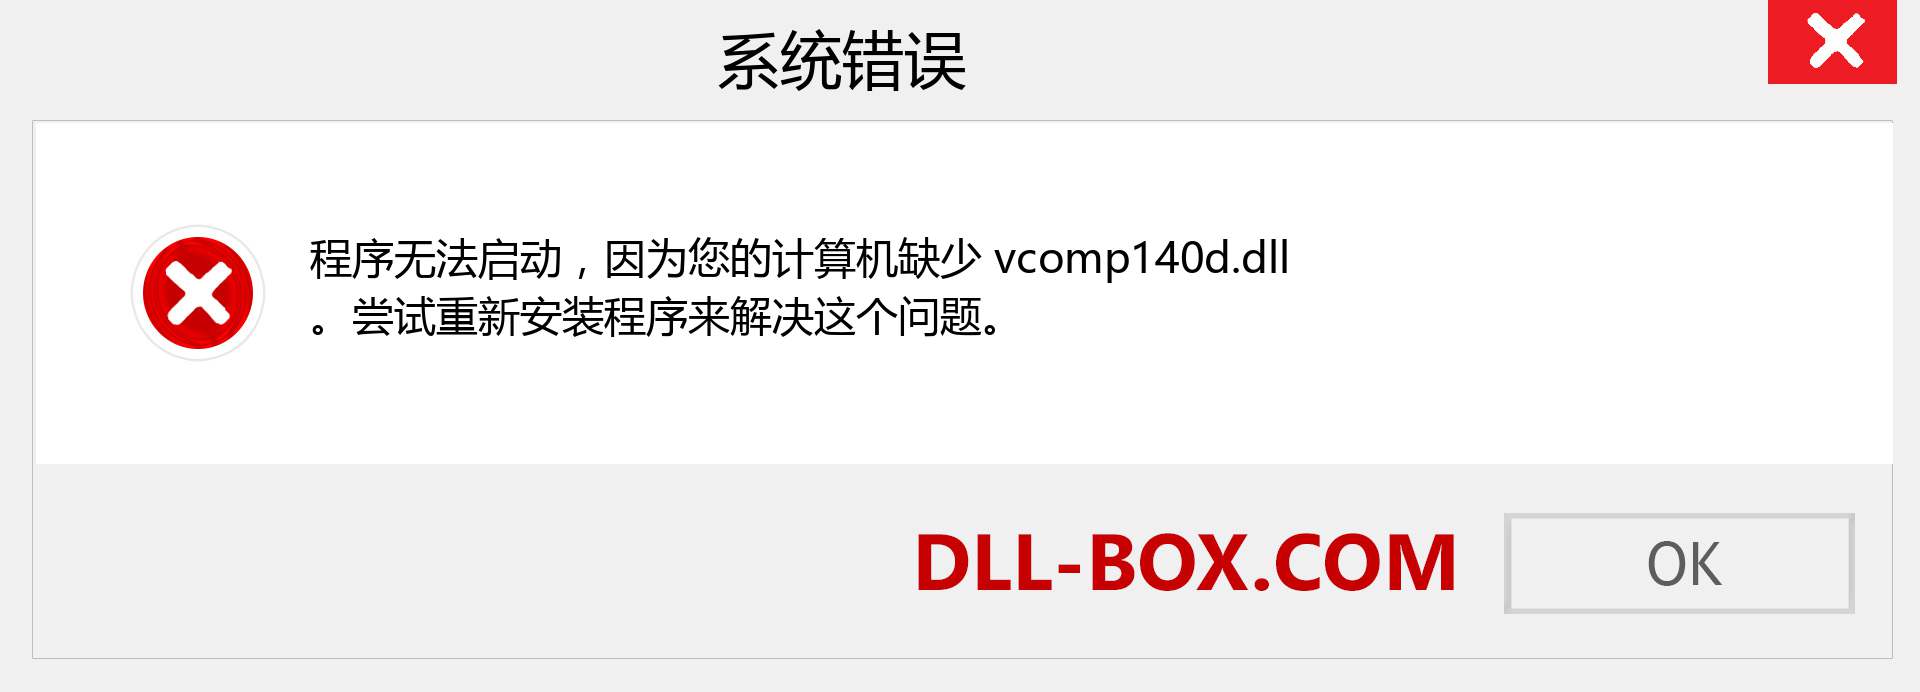 vcomp140d.dll 文件丢失？。 适用于 Windows 7、8、10 的下载 - 修复 Windows、照片、图像上的 vcomp140d dll 丢失错误